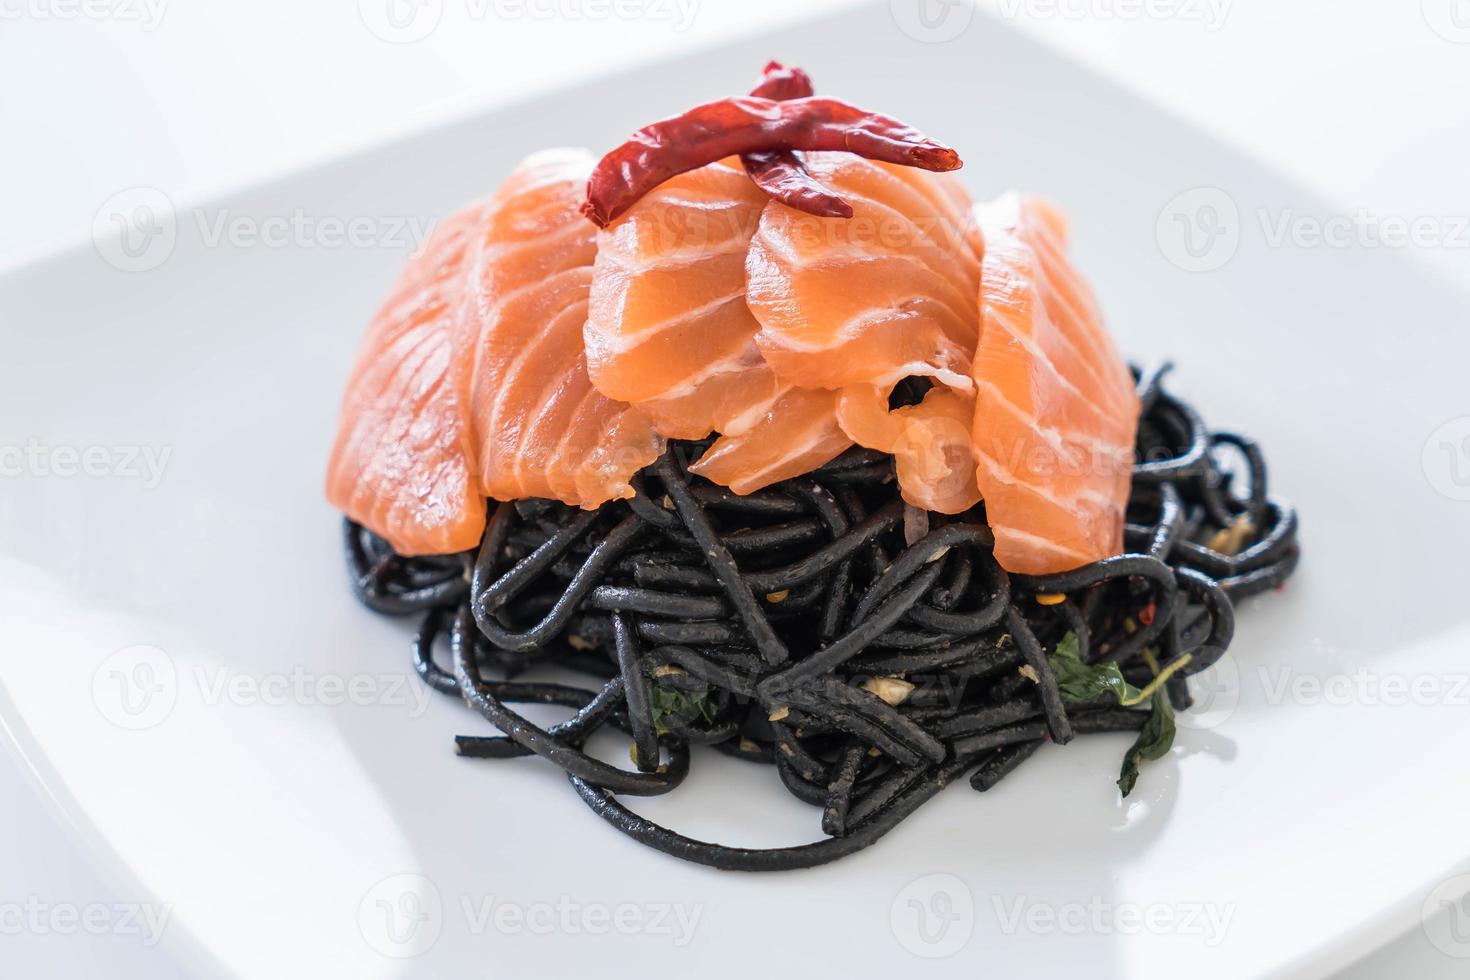 spaghetti neri piccanti al salmone - fusion food style foto